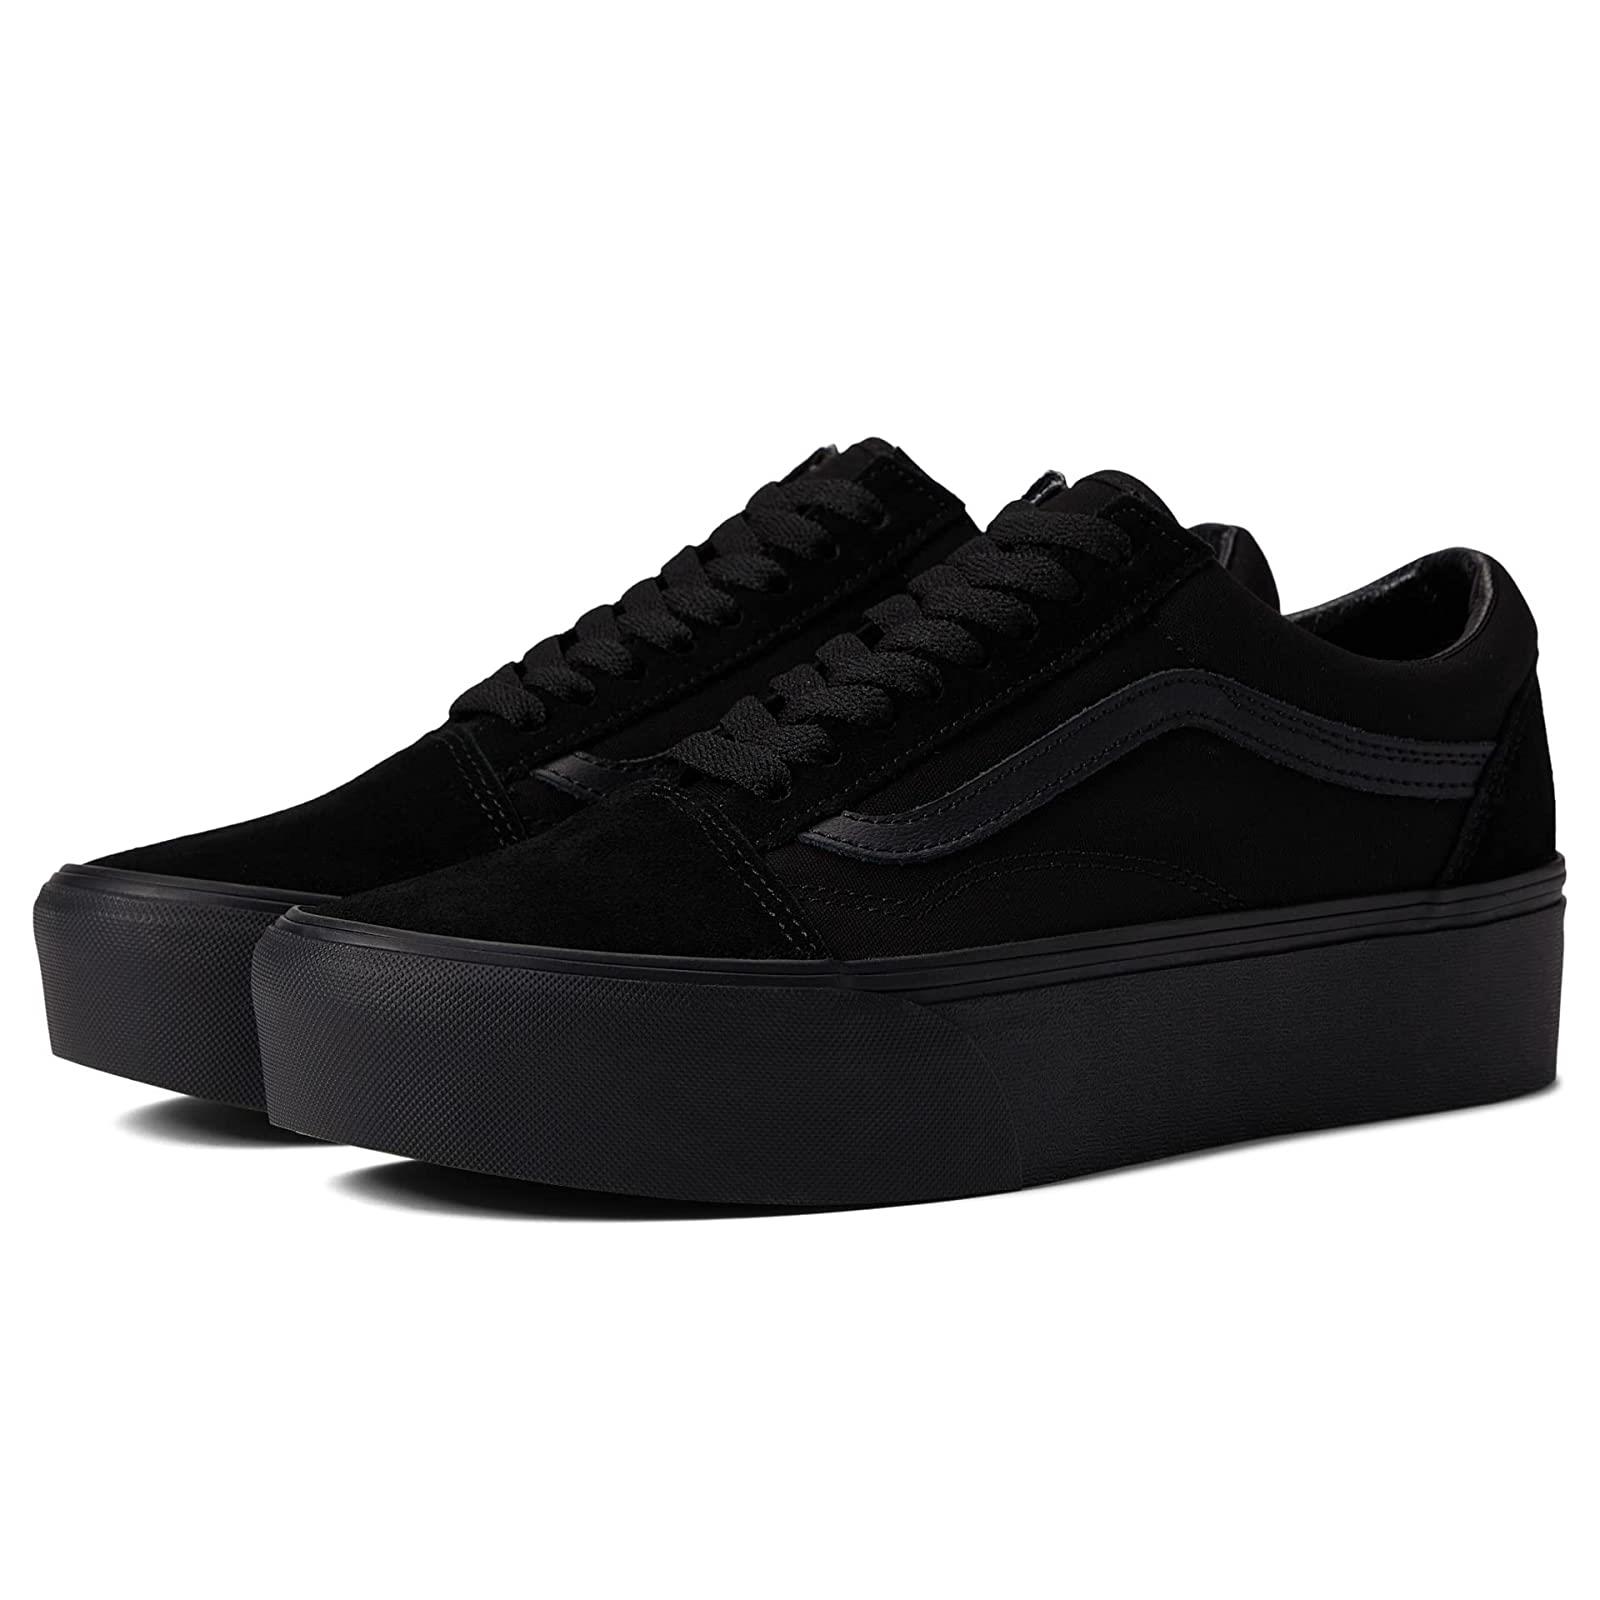 Unisex Sneakers Athletic Shoes Vans Old Skool Stackform Suede/Canvas Black/Black